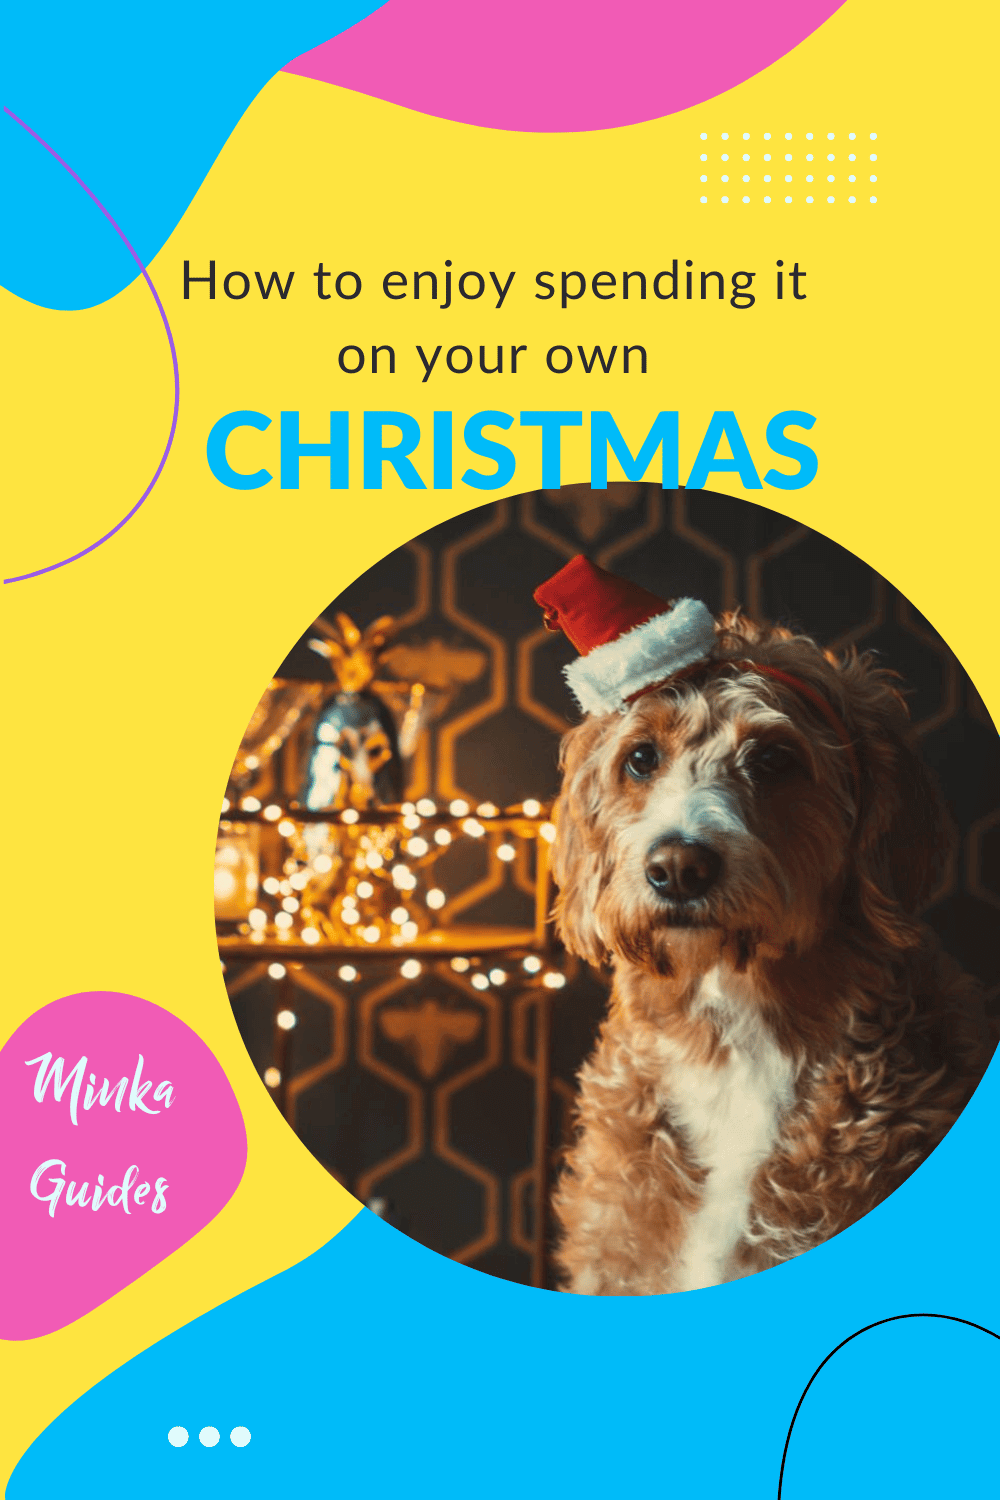 Spending Christmas alone | Minka Guides